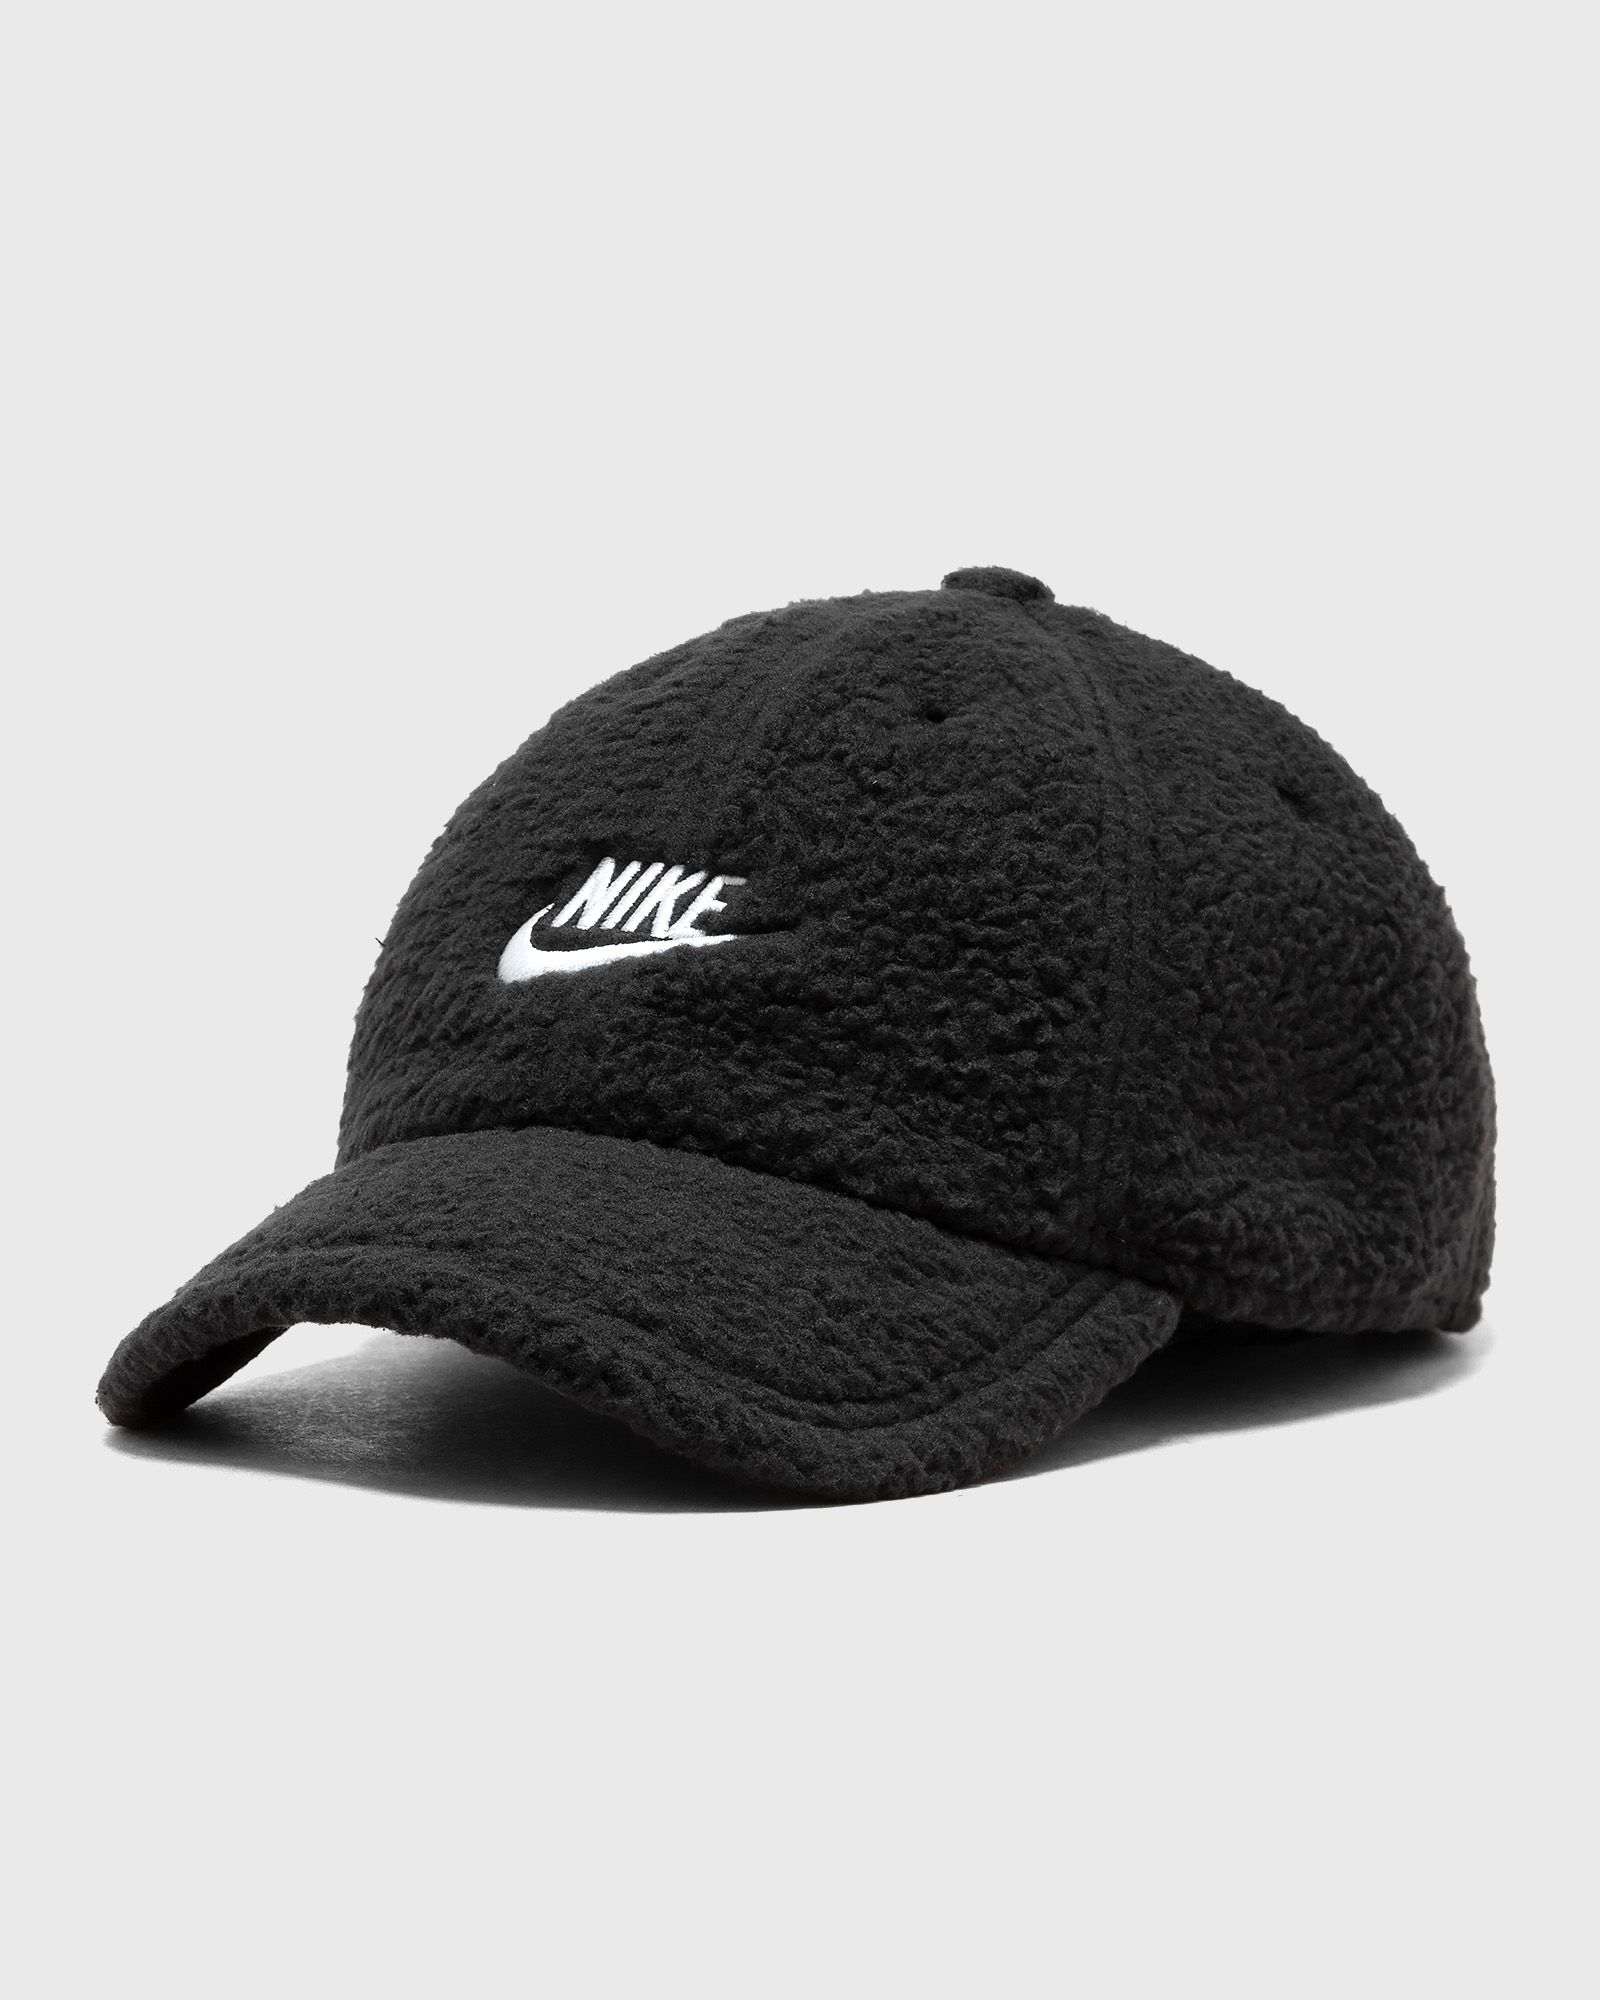 Nike - club cap unstructured curved bill cap men caps black in größe:s/m